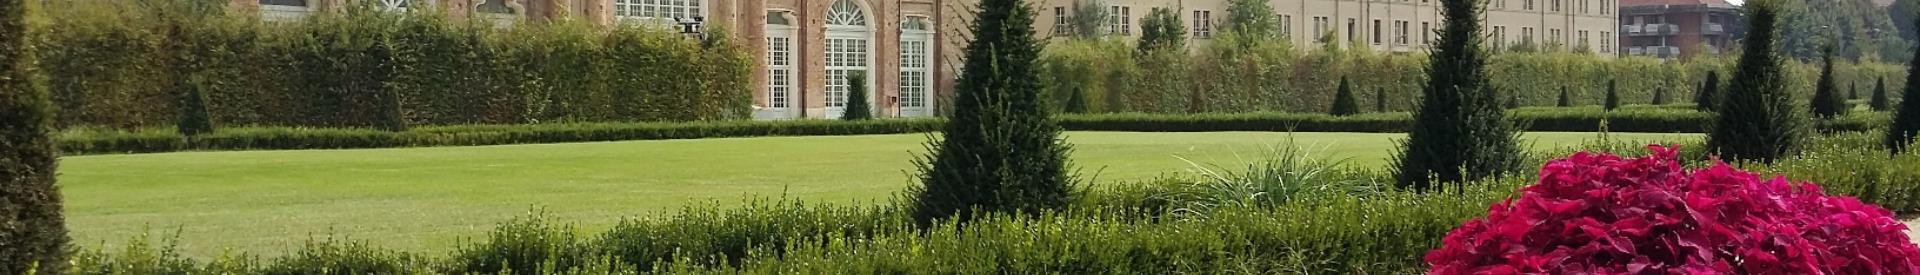 Os jardins e toda a beleza da Reggia de Venaria Reale esperam por você.